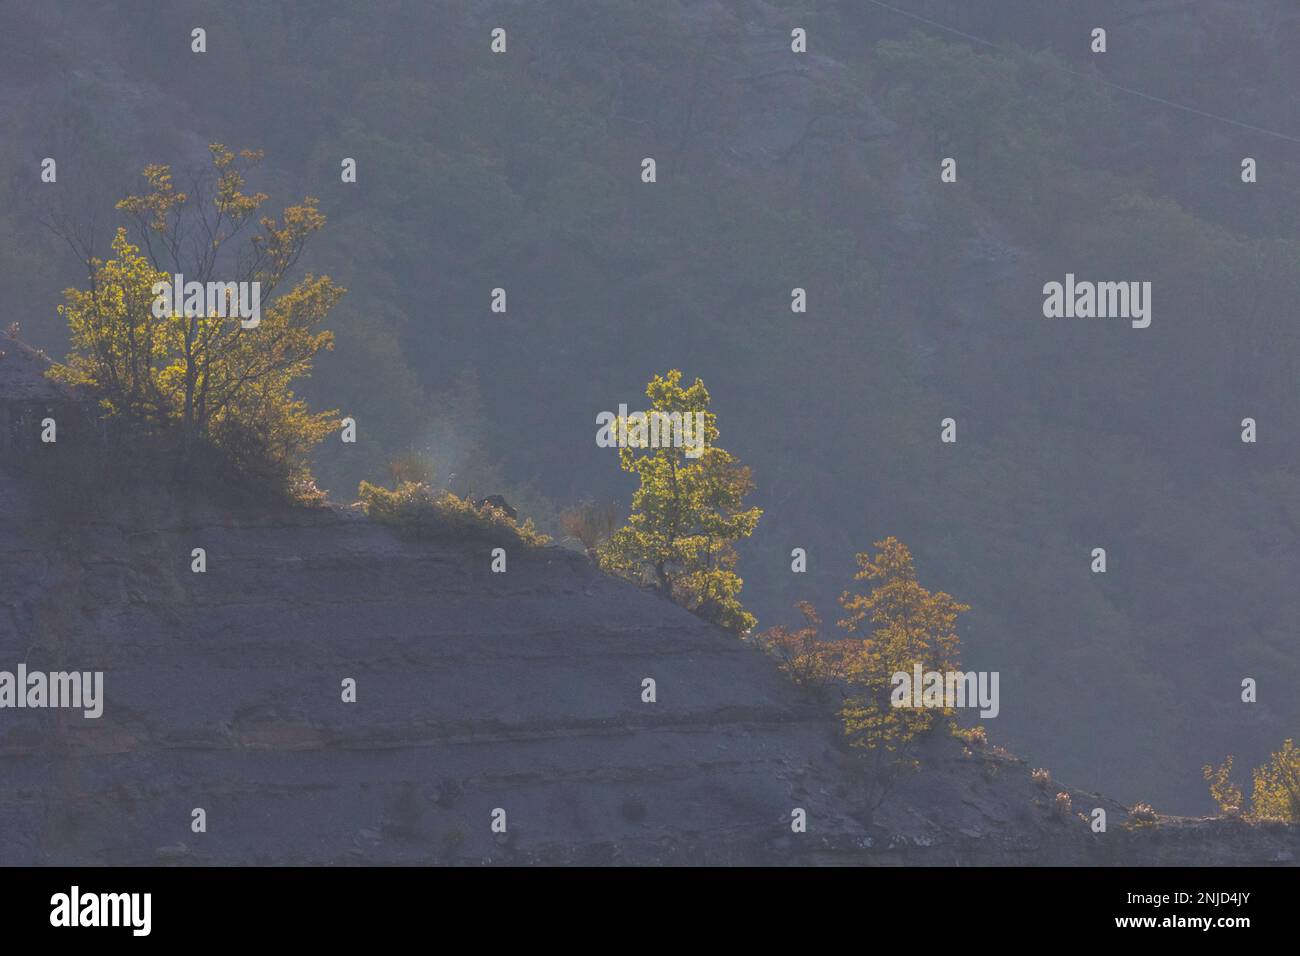 Leuchtende Laubbäume im Gegenlicht der aufgehenden Sonne auf einem Gebirgsgrat - leuchtende Laubbäume mit Hintergrundbeleuchtung der aufgehenden Sonne auf einem Bergkamm Stockfoto